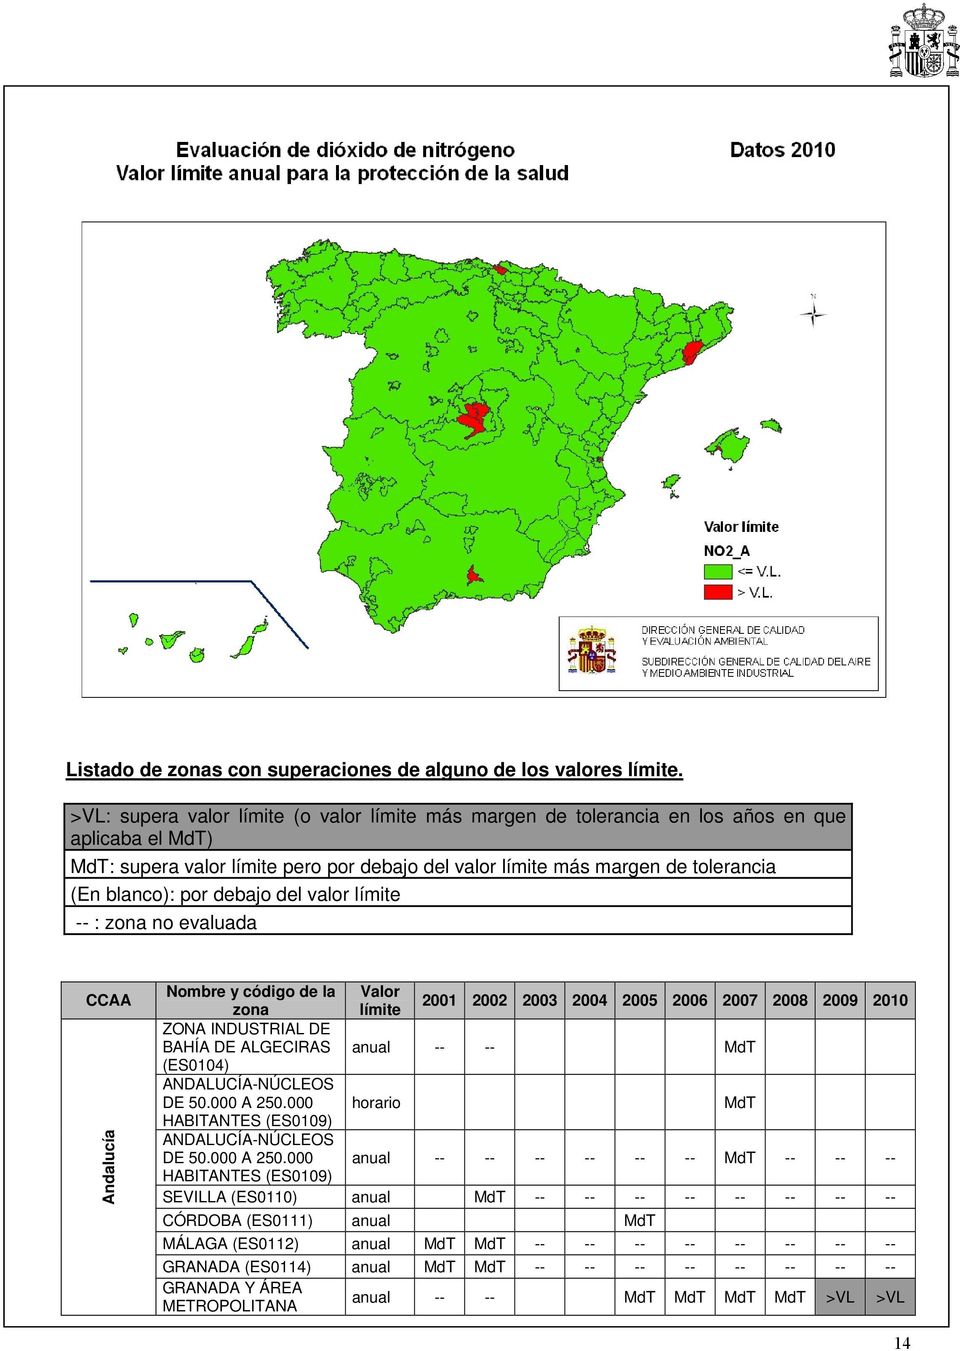 por debajo del valor límite -- : zona no evaluada CCAA Andalucía Nombre y código de la Valor zona límite 2001 2002 2003 2004 2005 2006 2007 2008 2009 2010 ZONA INDUSTRIAL DE BAHÍA DE ALGECIRAS anual